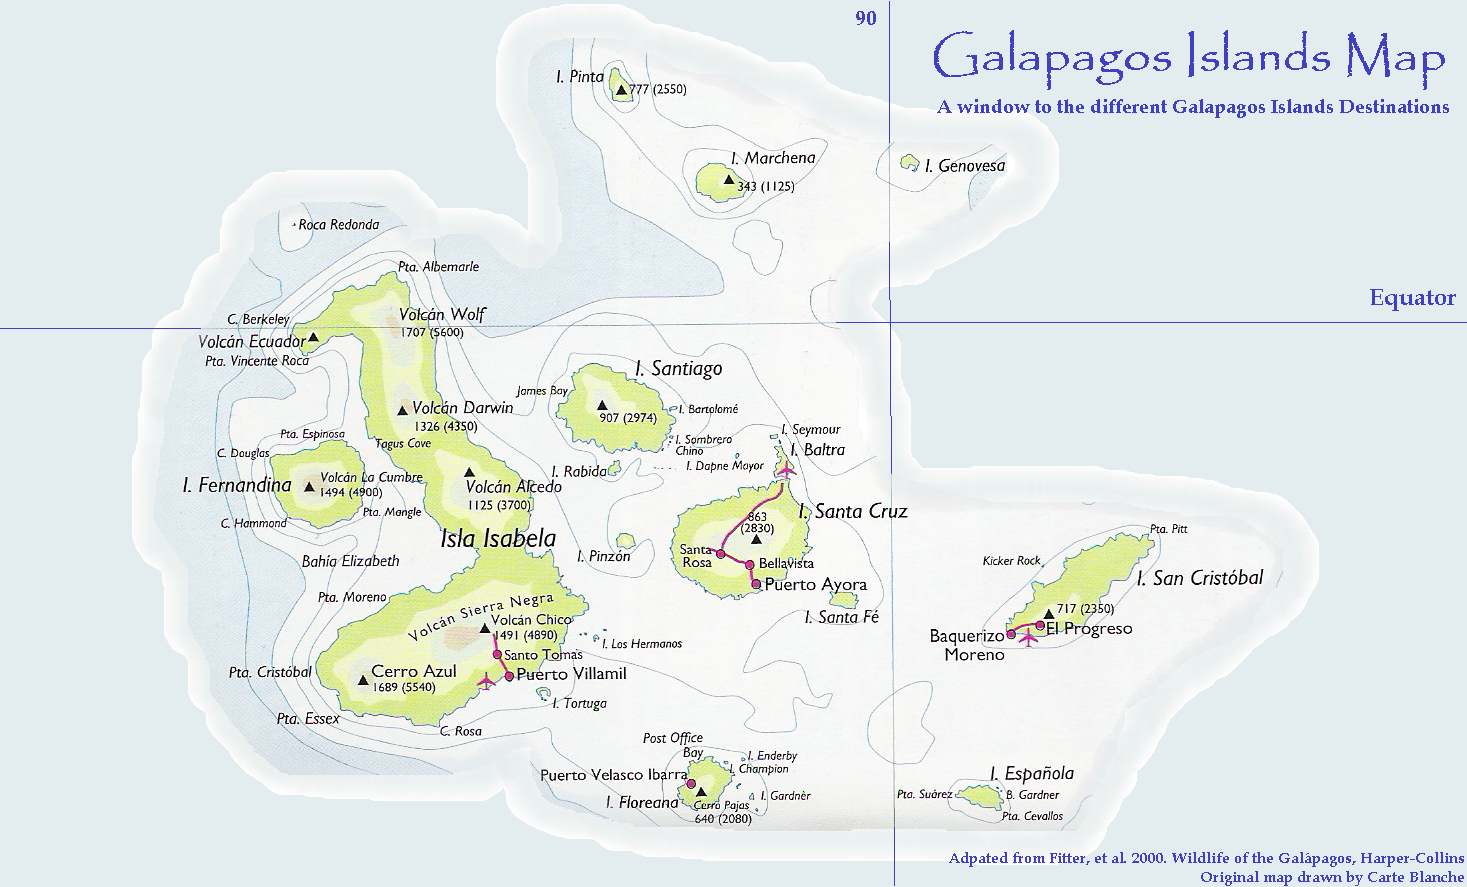 Пивной остров в составе галапагос